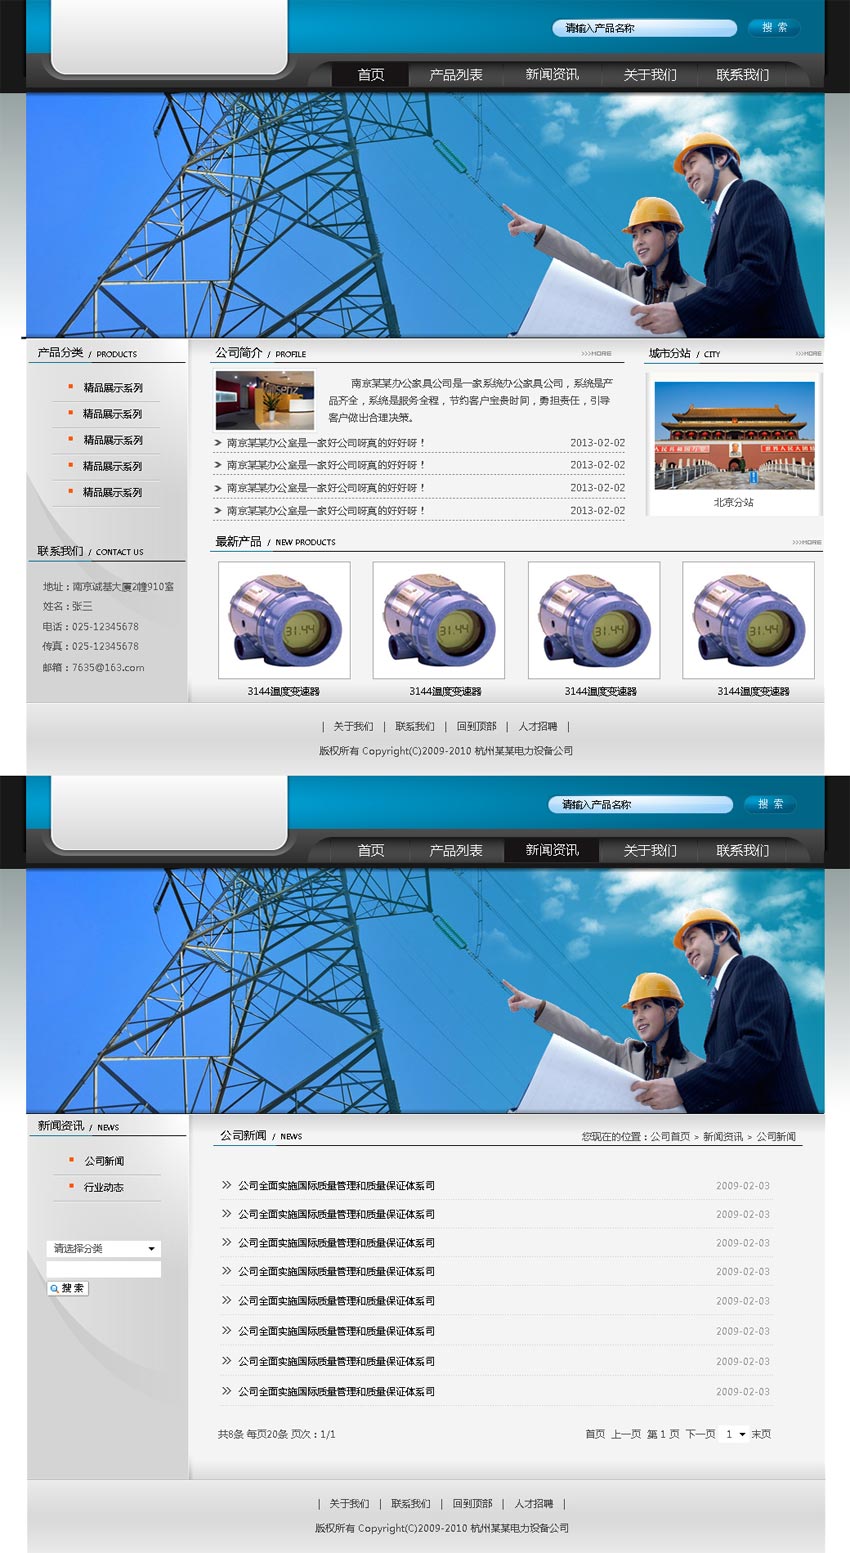 国内简单的机械设备企业网站模板psd全套下载